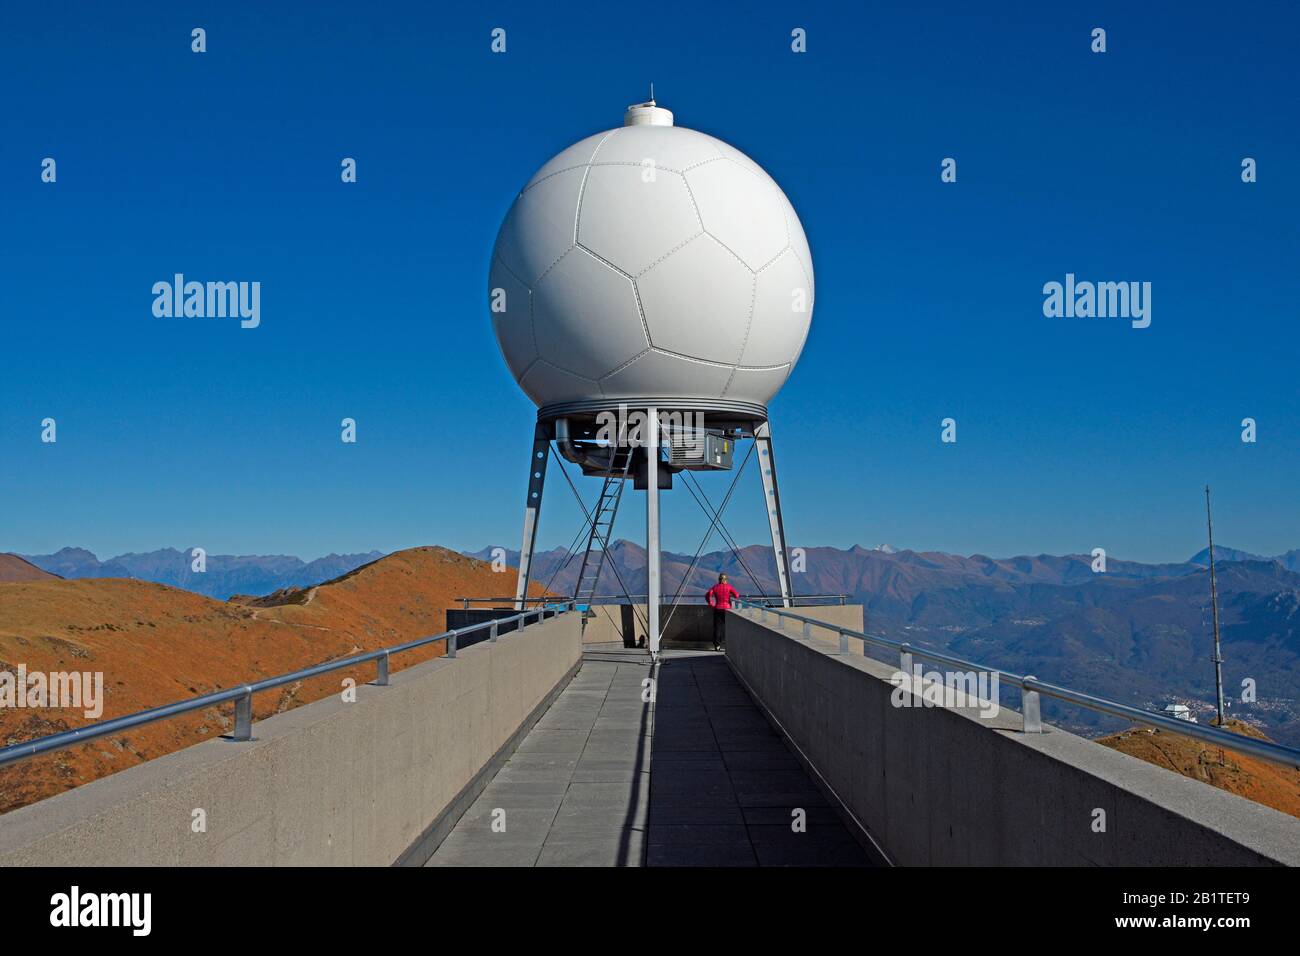 Weather radar immagini e fotografie stock ad alta risoluzione - Alamy